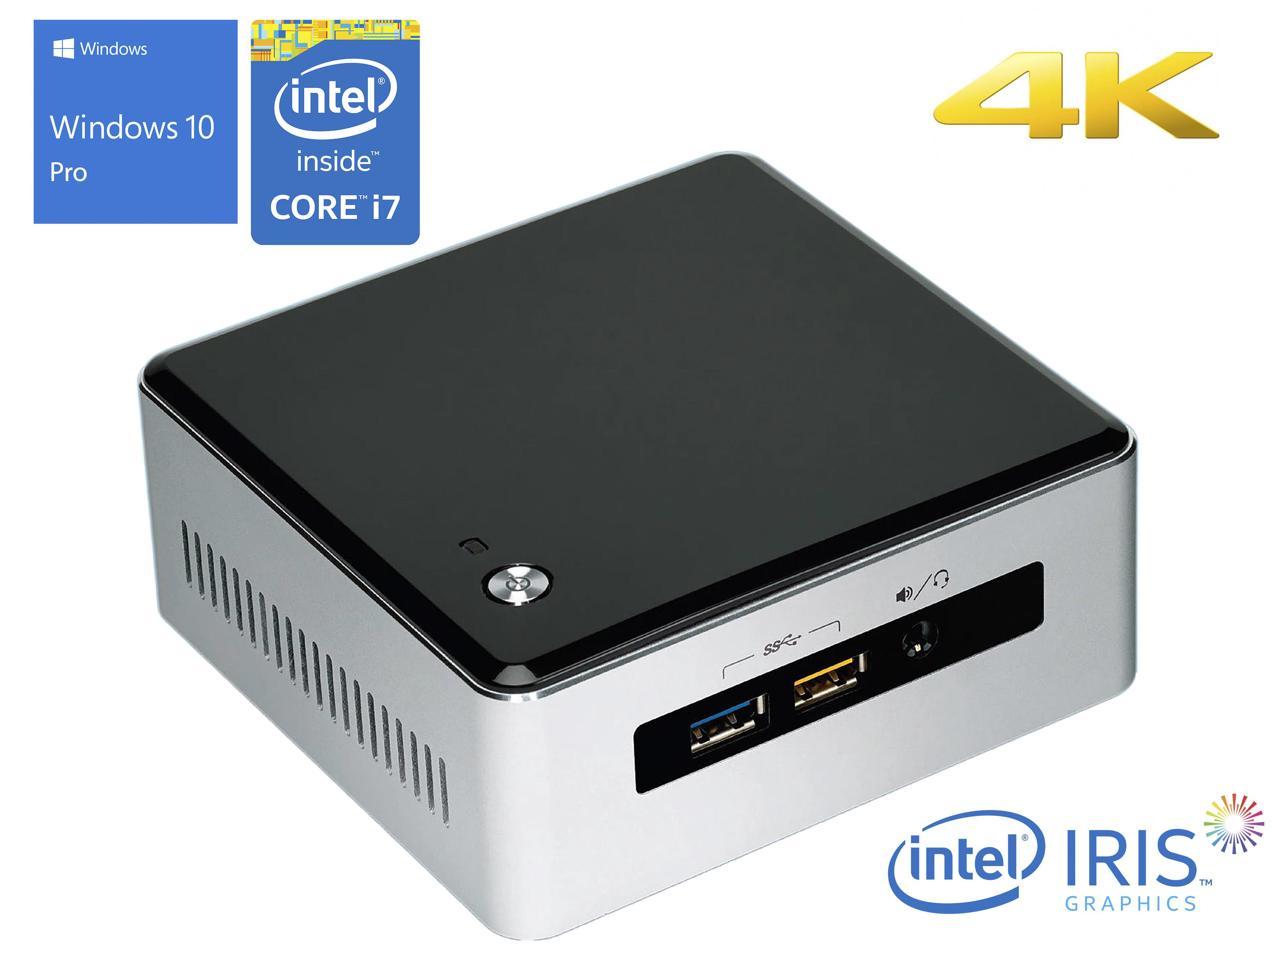 Intel NUC5i7RYH Mini PC, Intel Core i7-5557U Upto 3.40GHz, 8GB RAM, 1TB NVMe SSD + 1TB HDD, Mini HDMI, Mini DisplayPort, Wi-Fi, Bluetooth, Windows 10 Pro